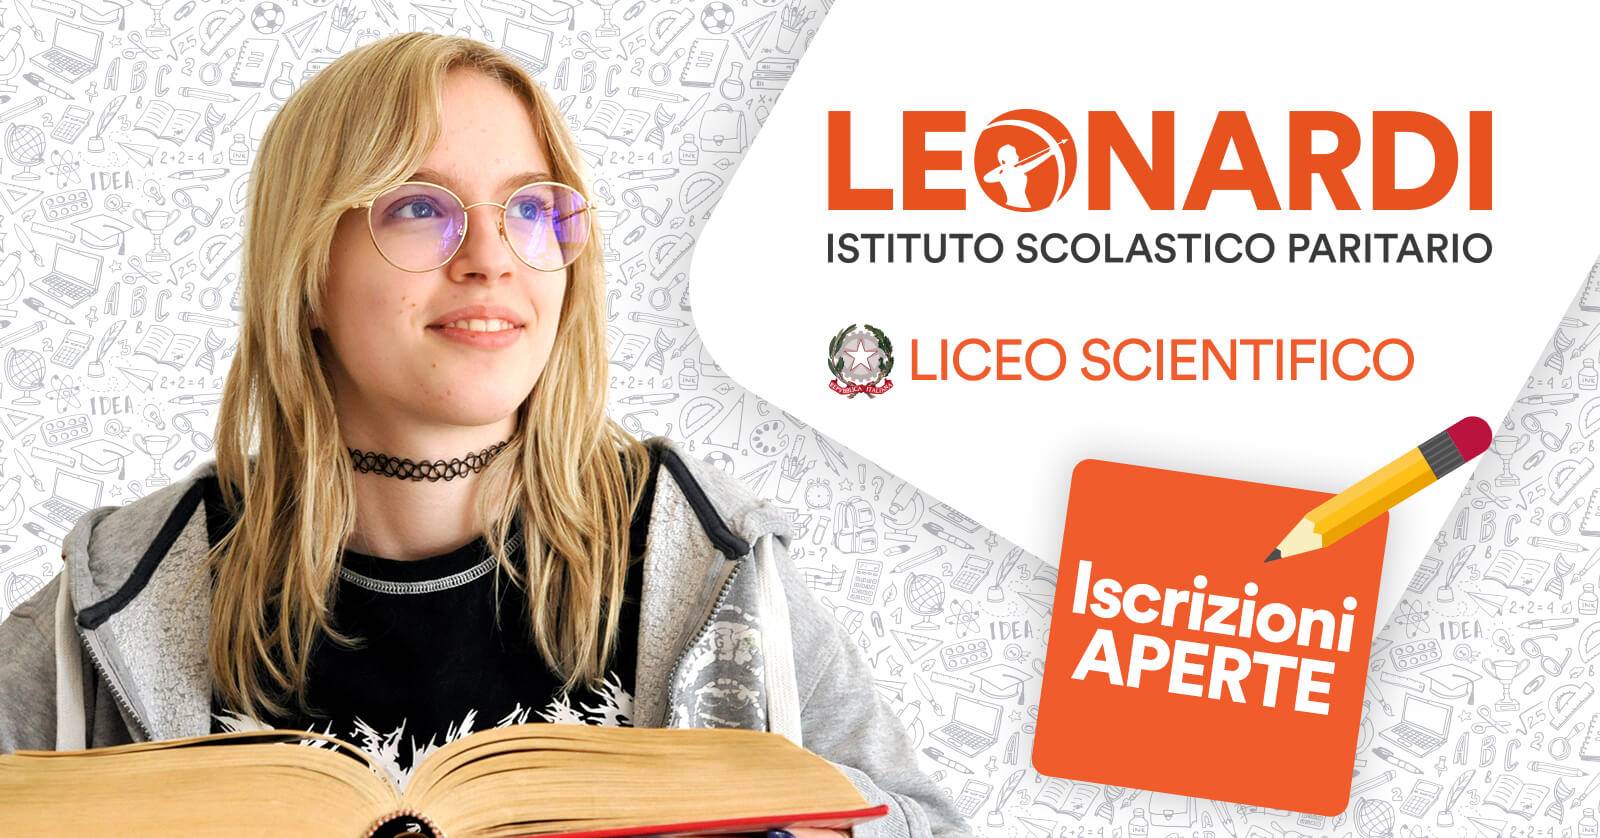 Liceo Scientifico Leonardi Perugia